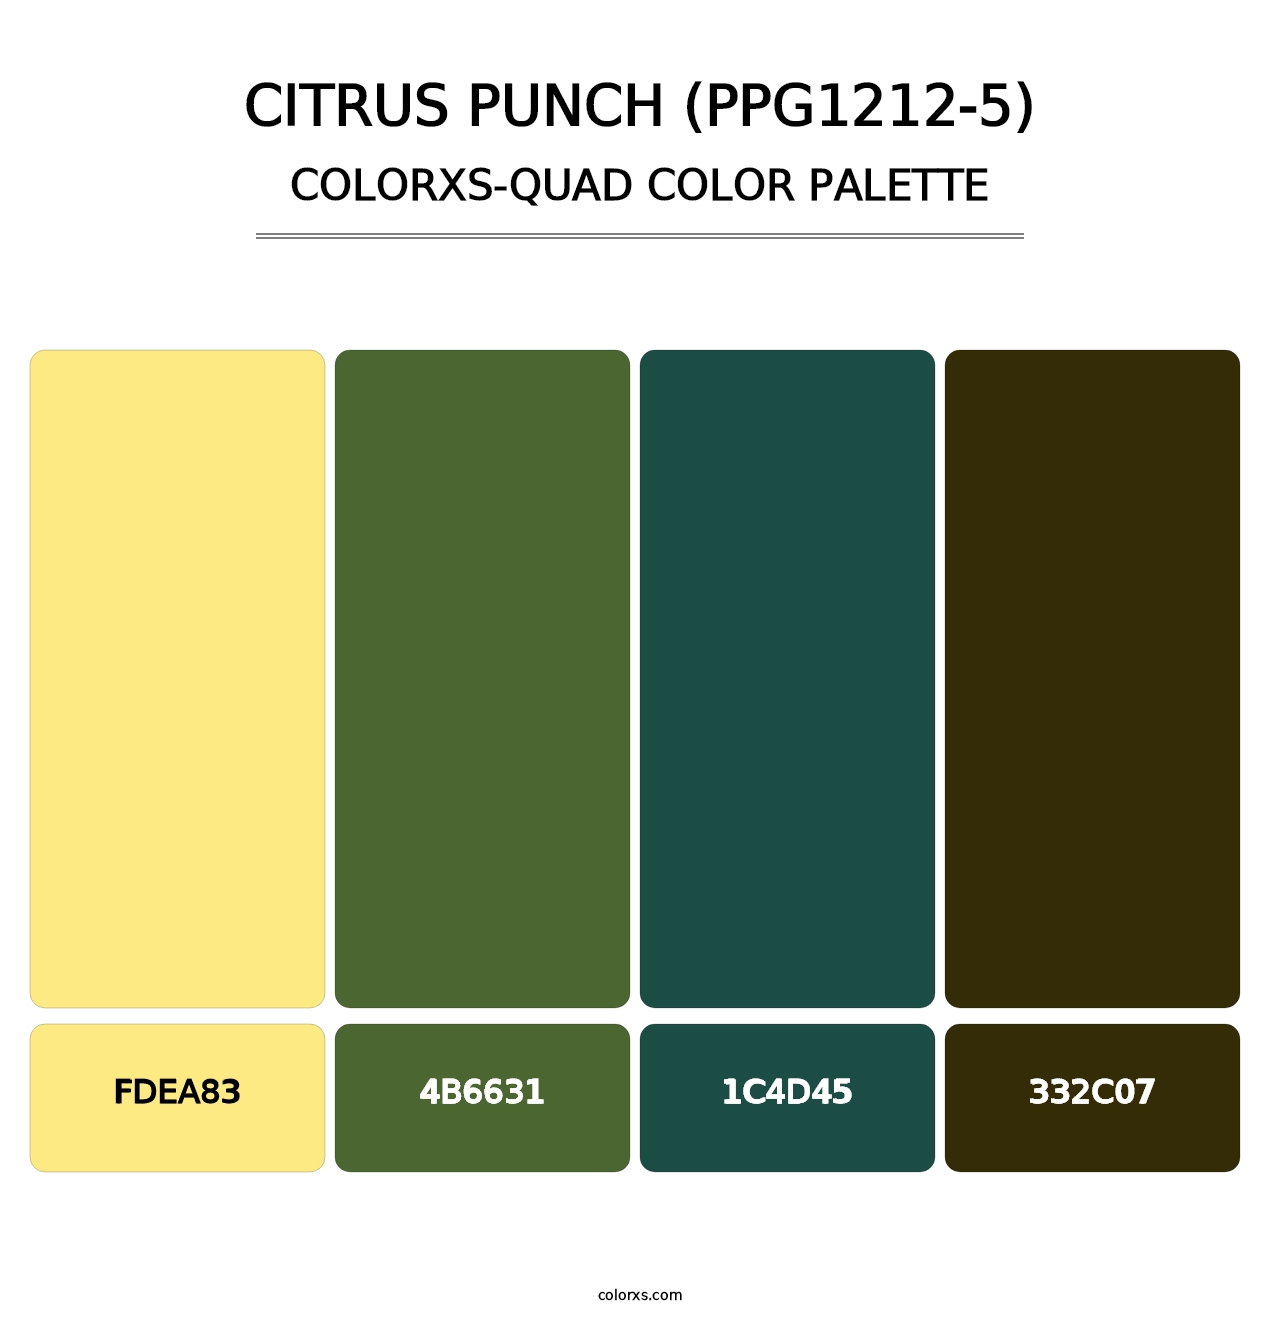 Citrus Punch (PPG1212-5) - Colorxs Quad Palette